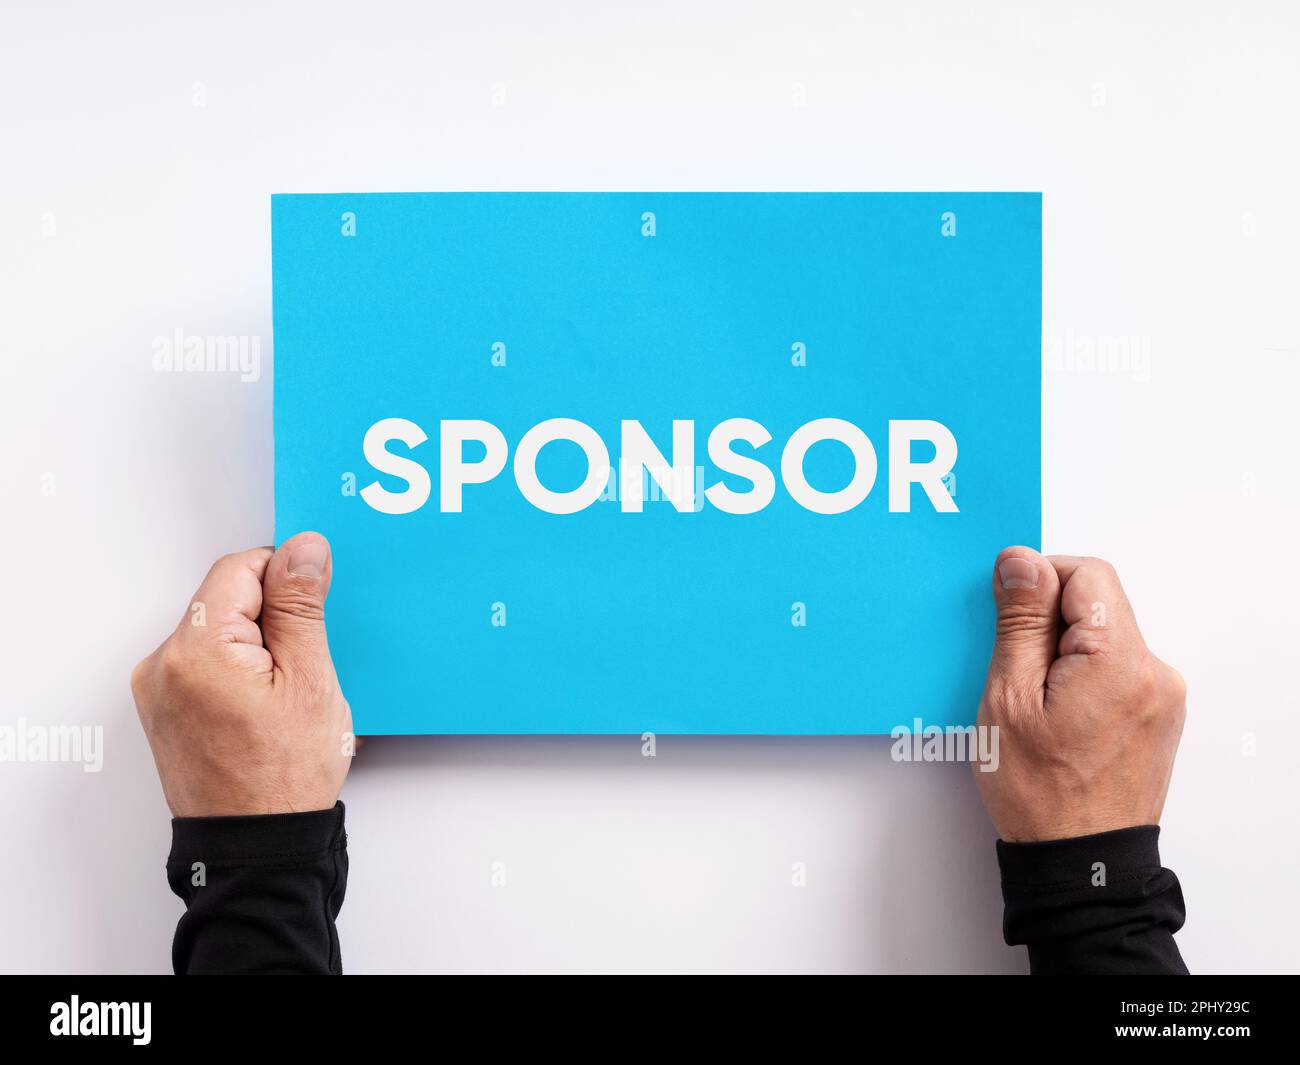 Sponsoring-, finanzielle Unterstützung- oder Spendenkonzept für wohltätige Zwecke. Männliche Hand hält ein blaues Blatt mit dem Wort "Sponsor". Stockfoto